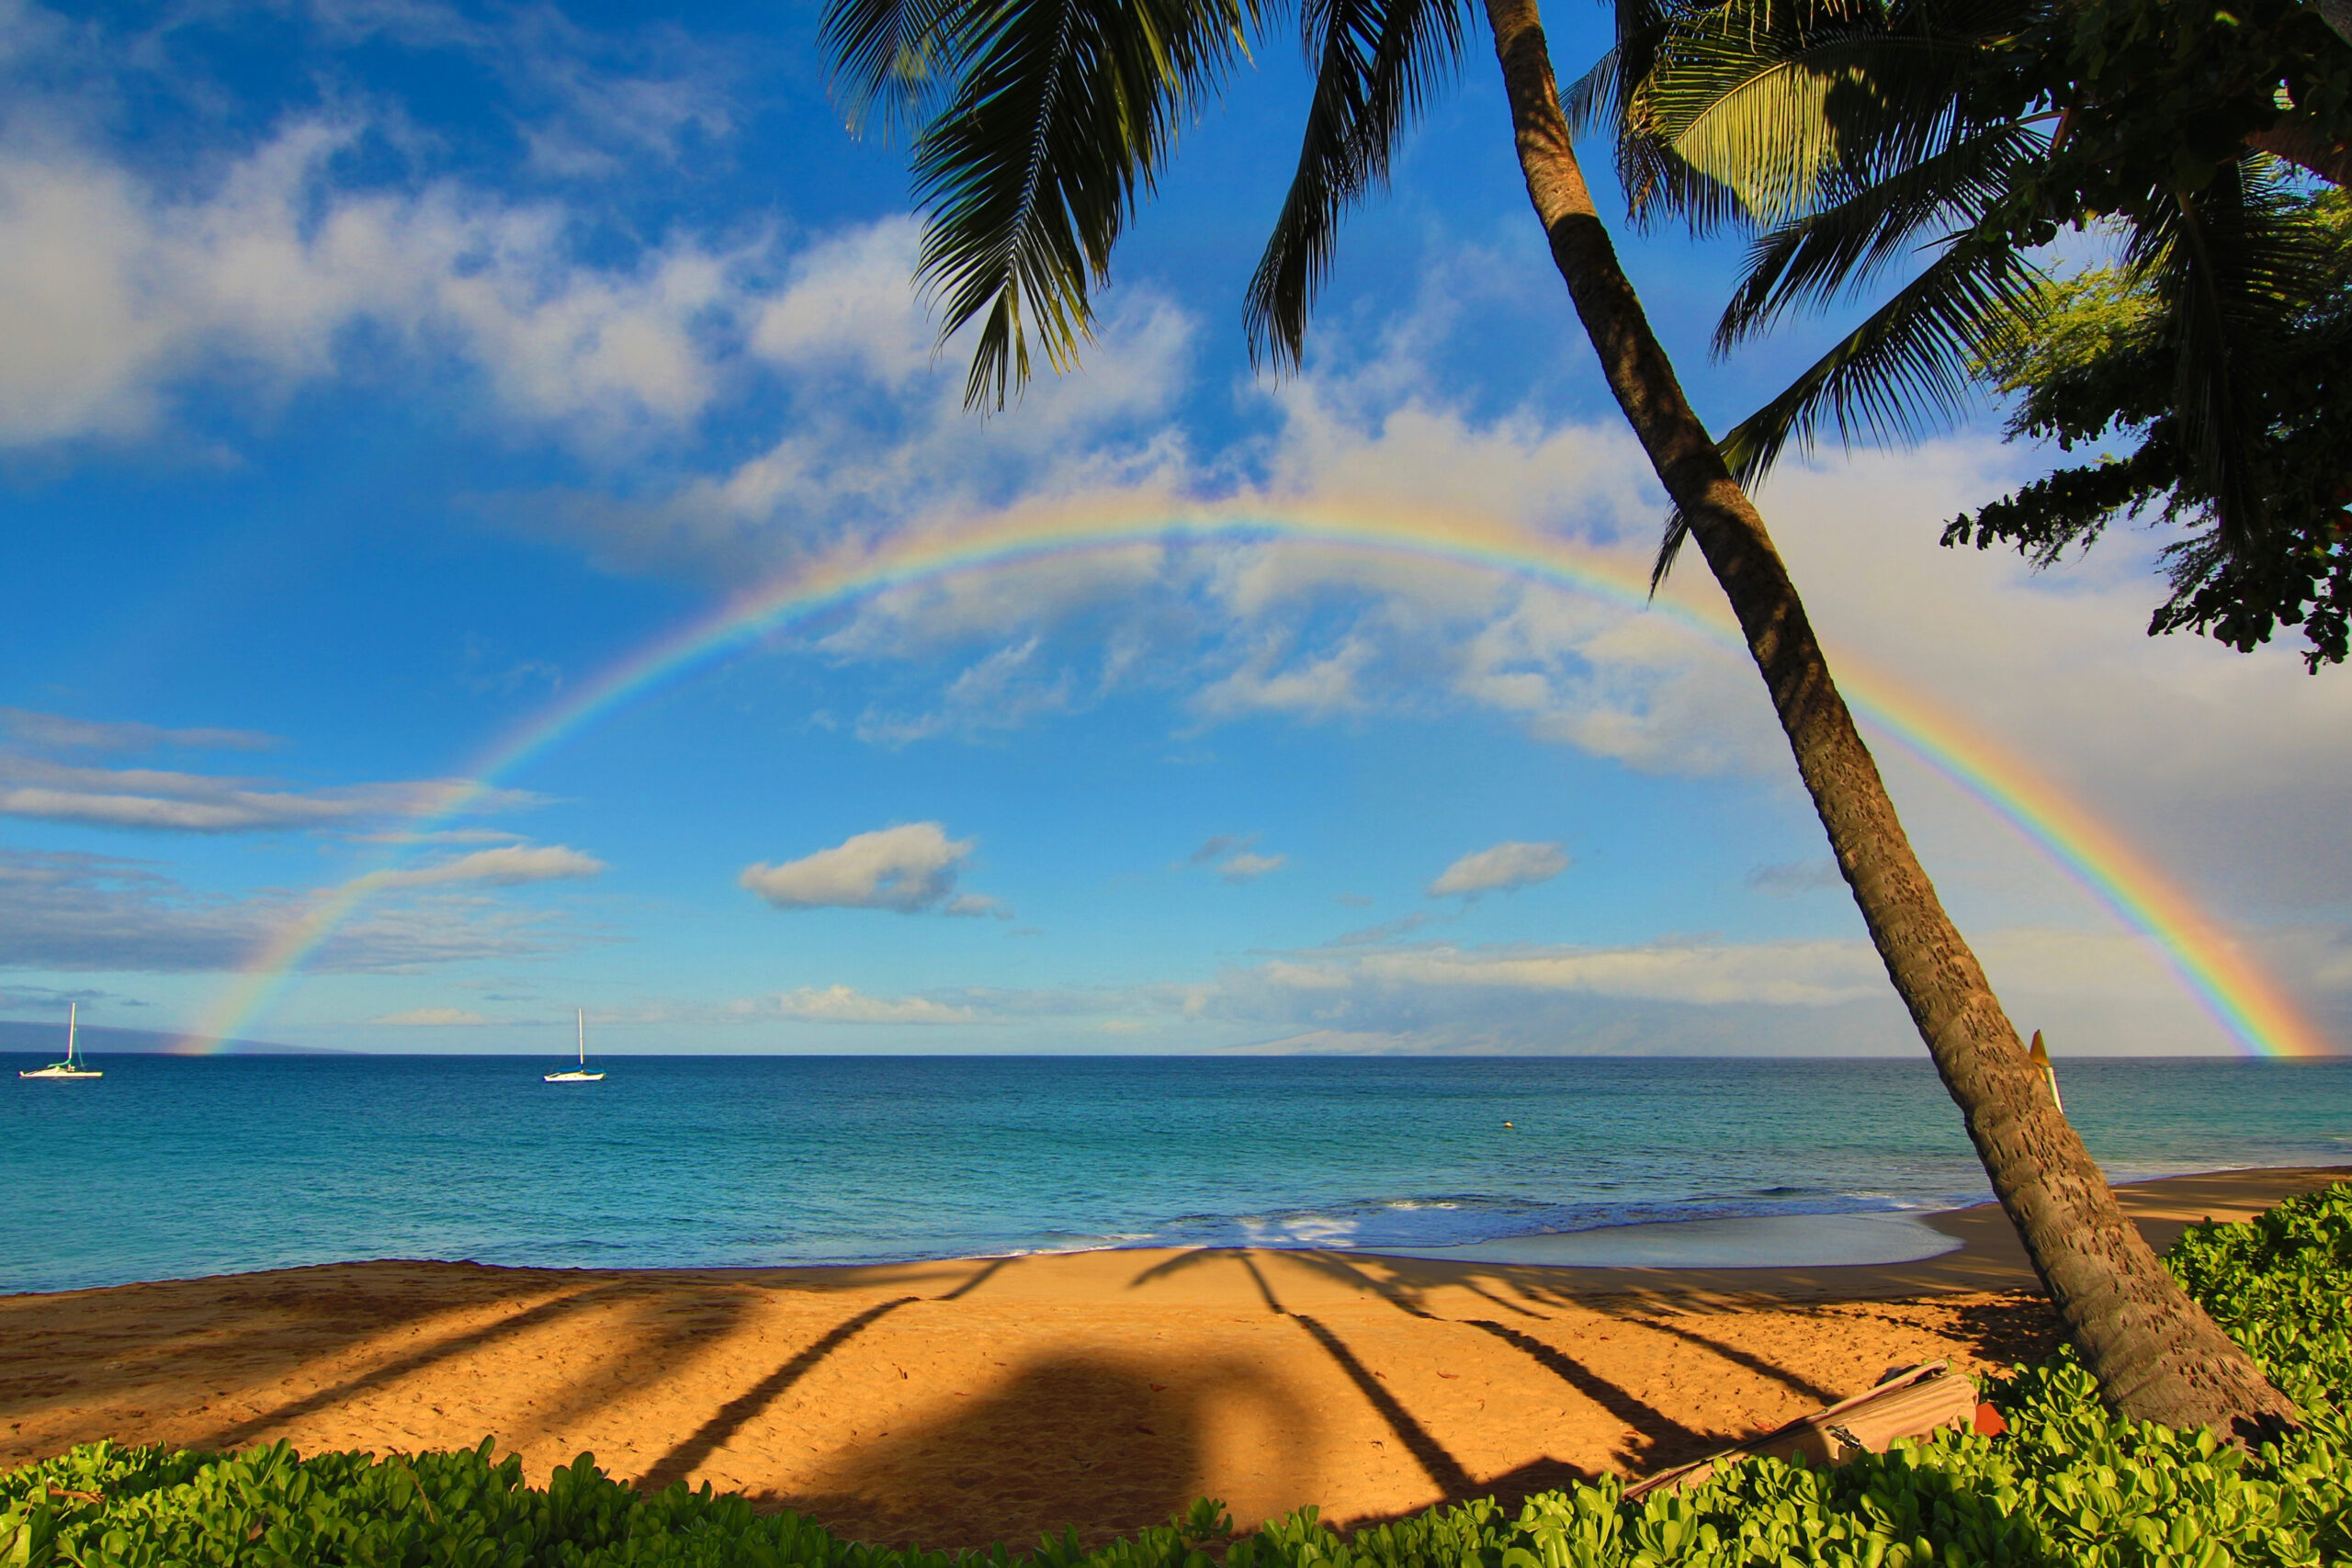 beach scene with rainbow